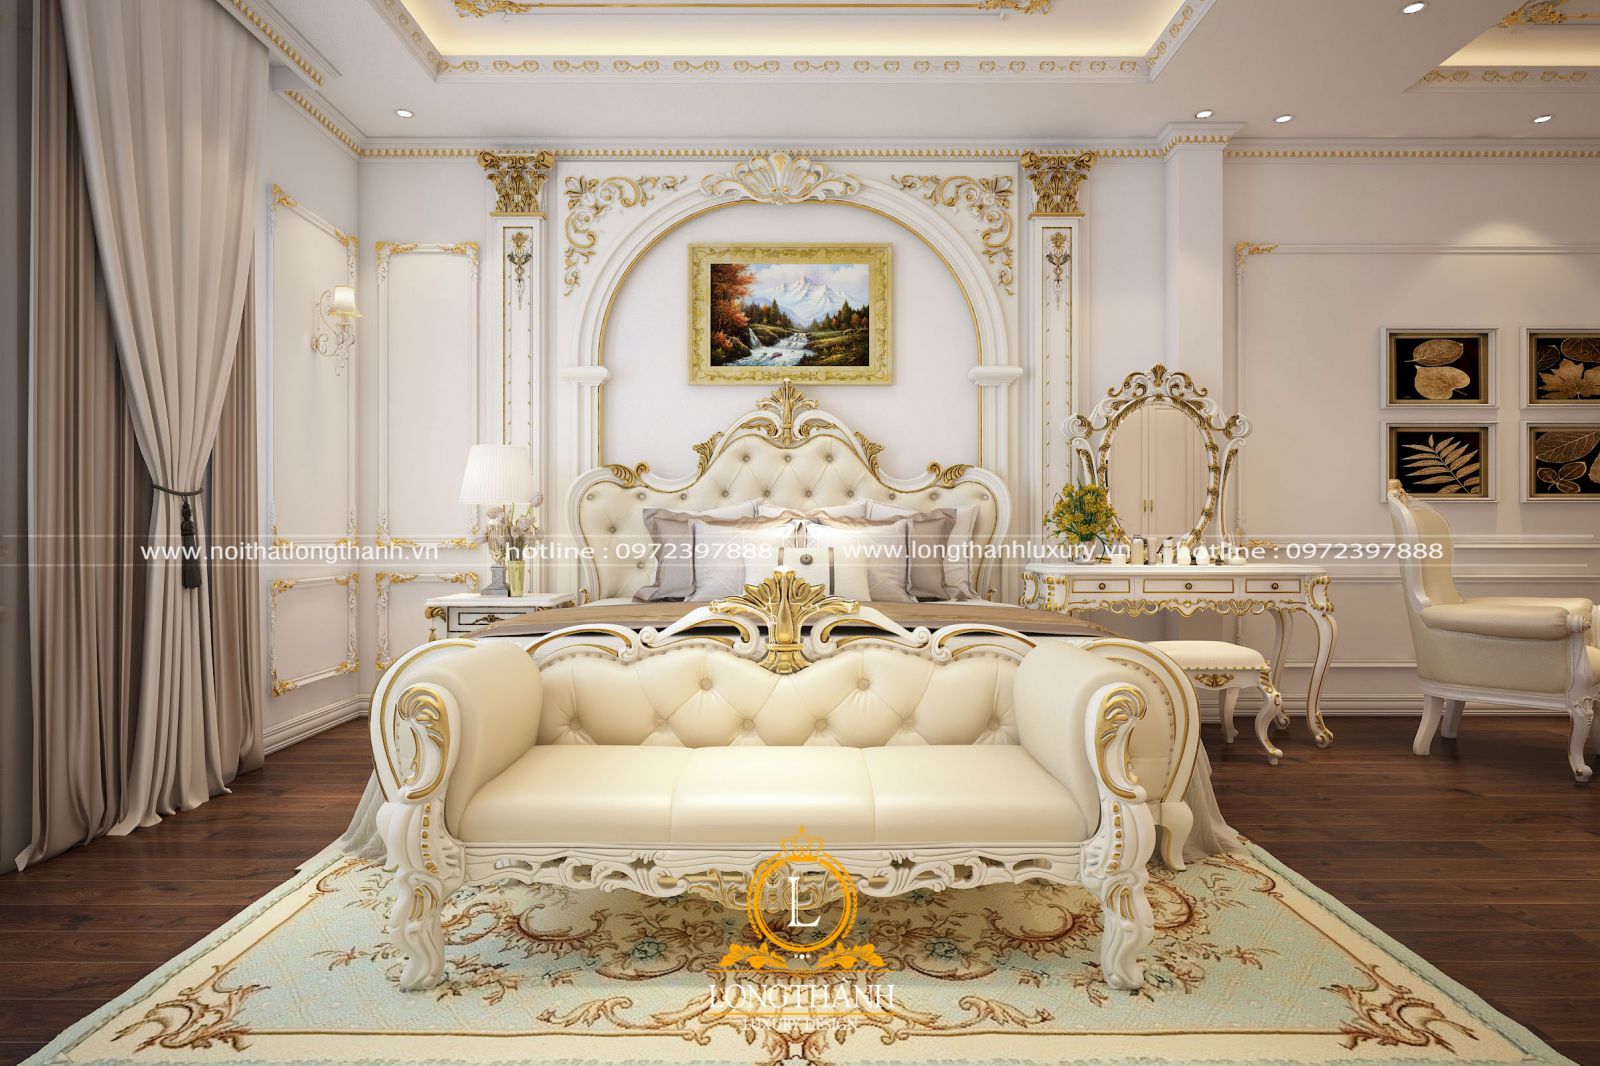 Thiết kế nội thất tân cổ điển cho phòng ngủ master đẹp mê ly